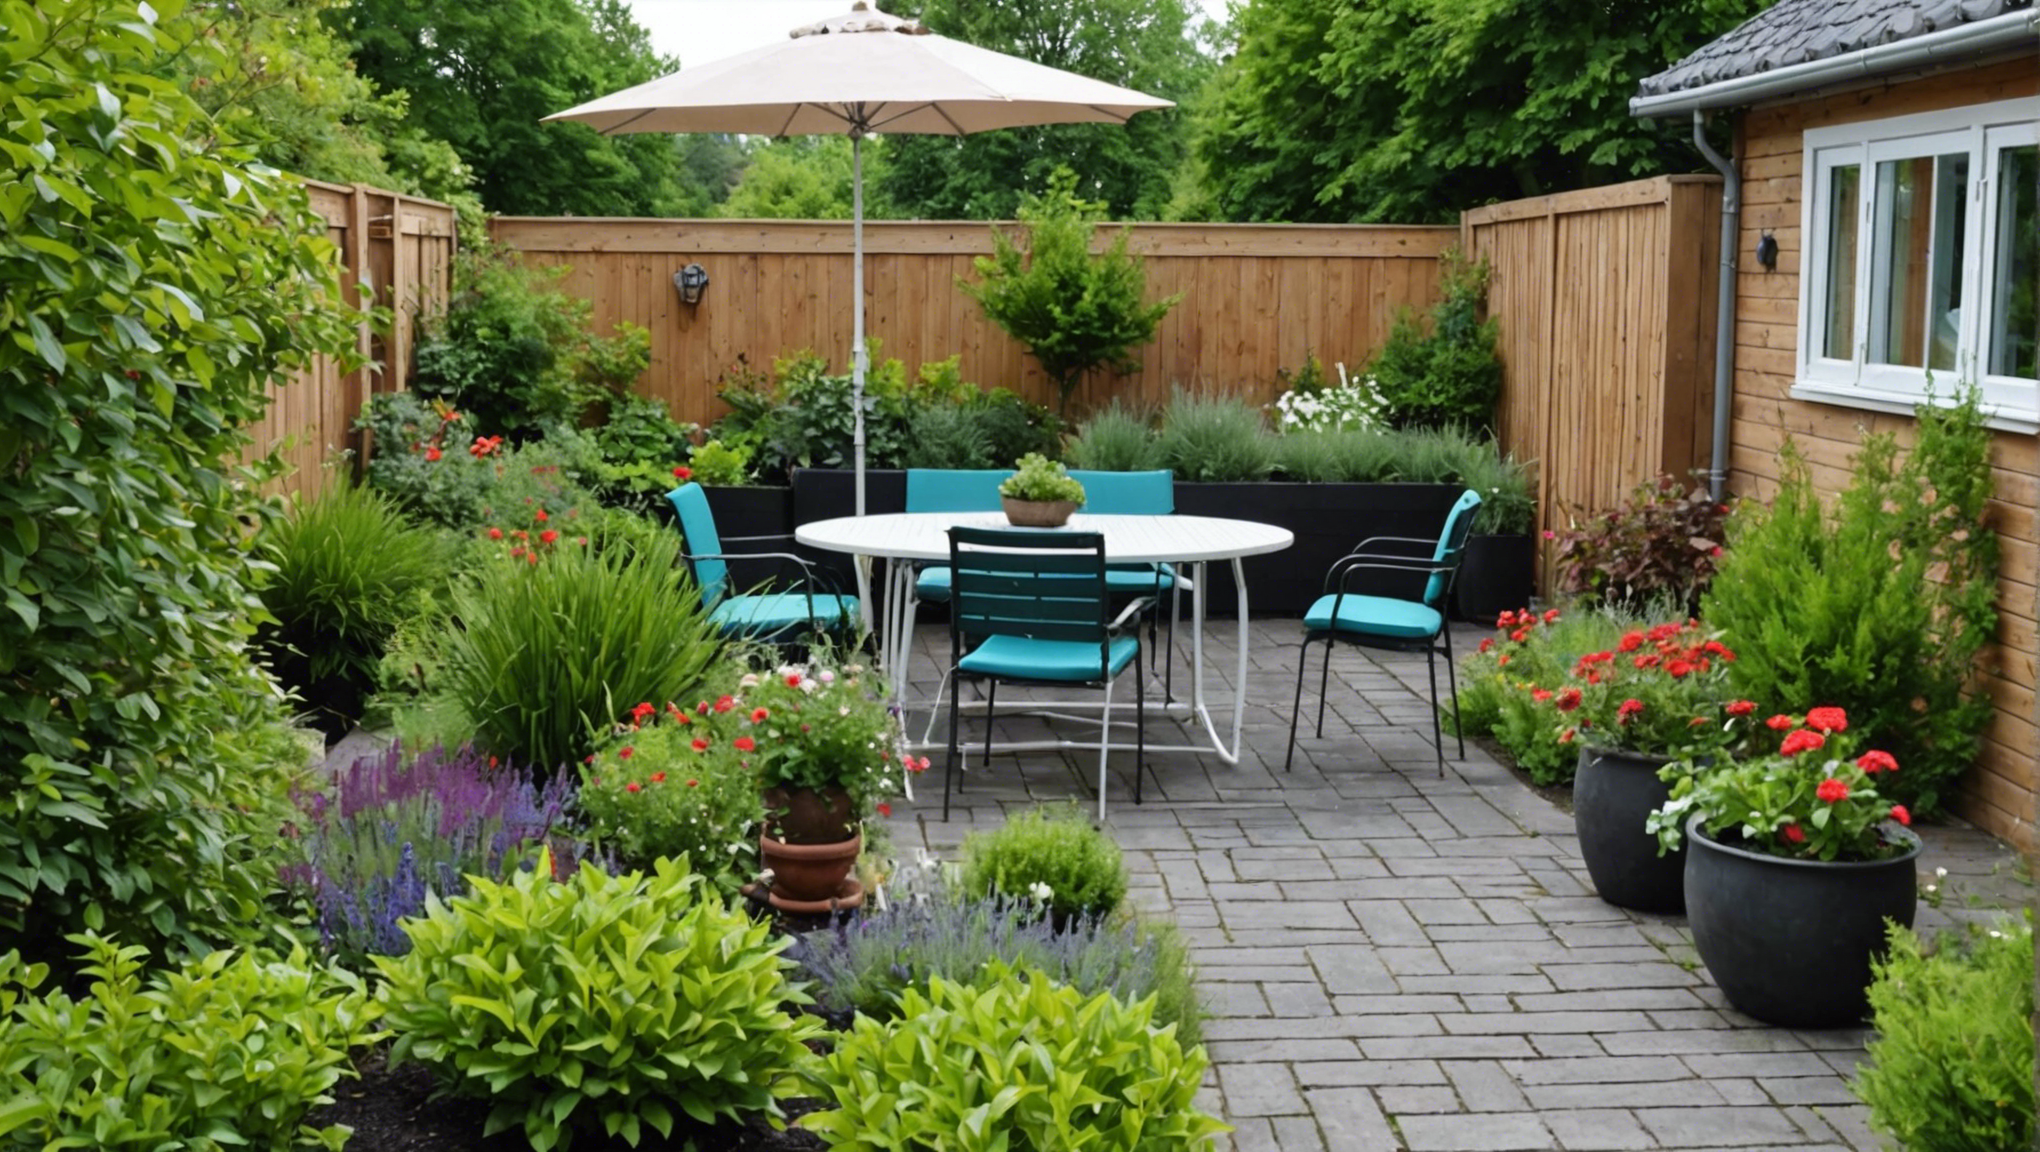 découvrez comment aménager votre jardin pour en faire un espace extérieur convivial et harmonieux grâce à nos conseils pratiques et inspirants.